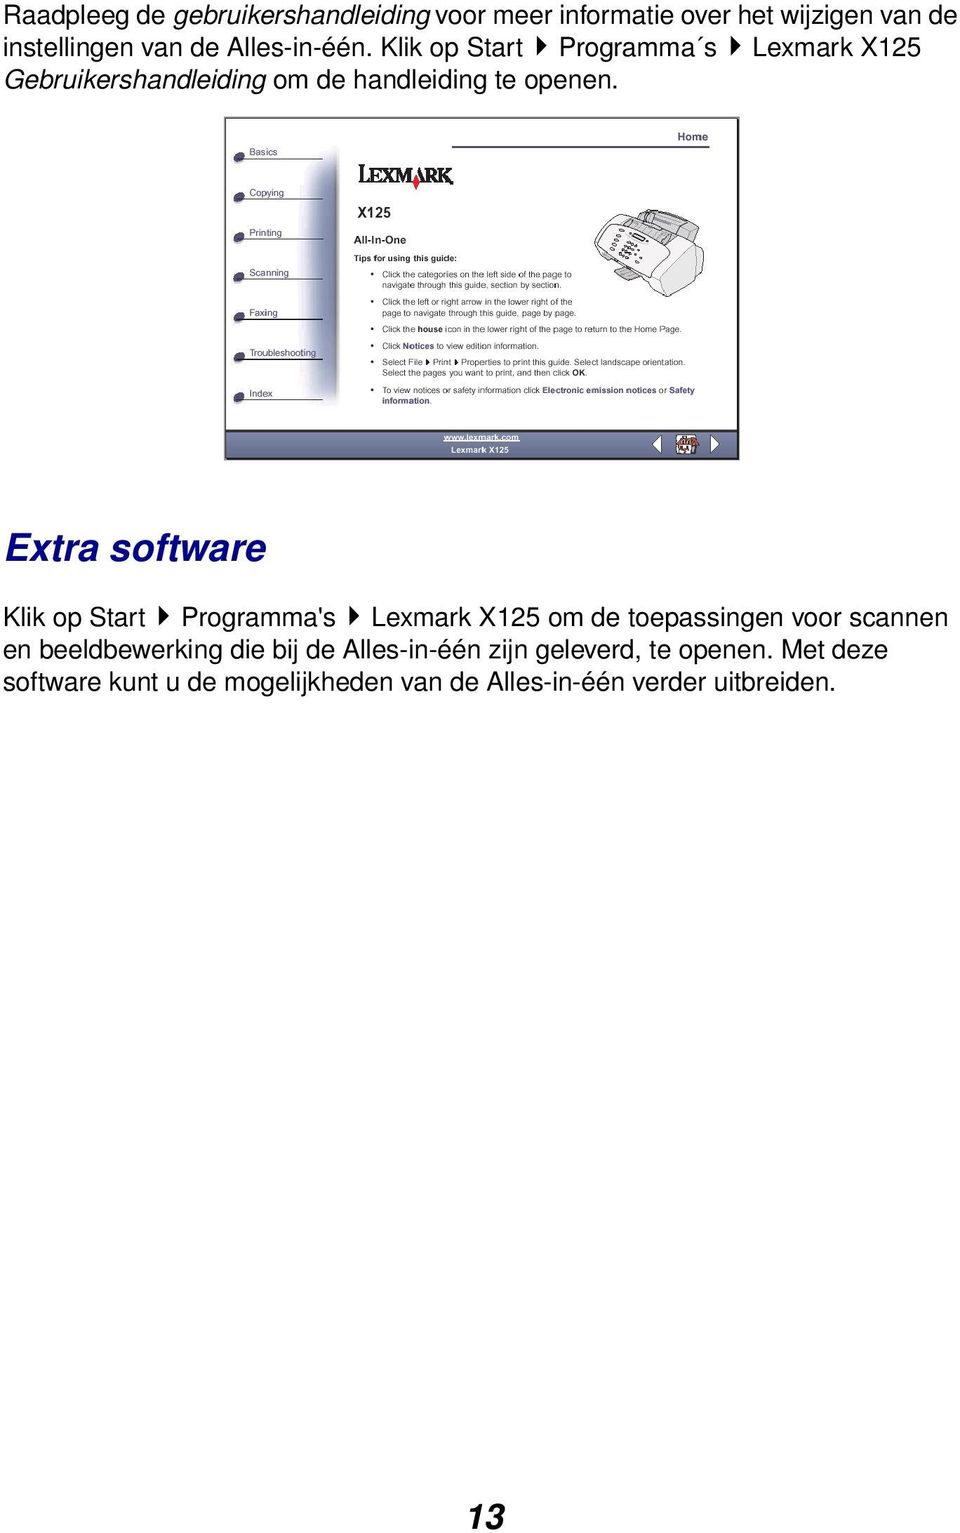 Extra software Klik op Start Programma's Lexmark X125 om de toepassingen voor scannen en beeldbewerking die